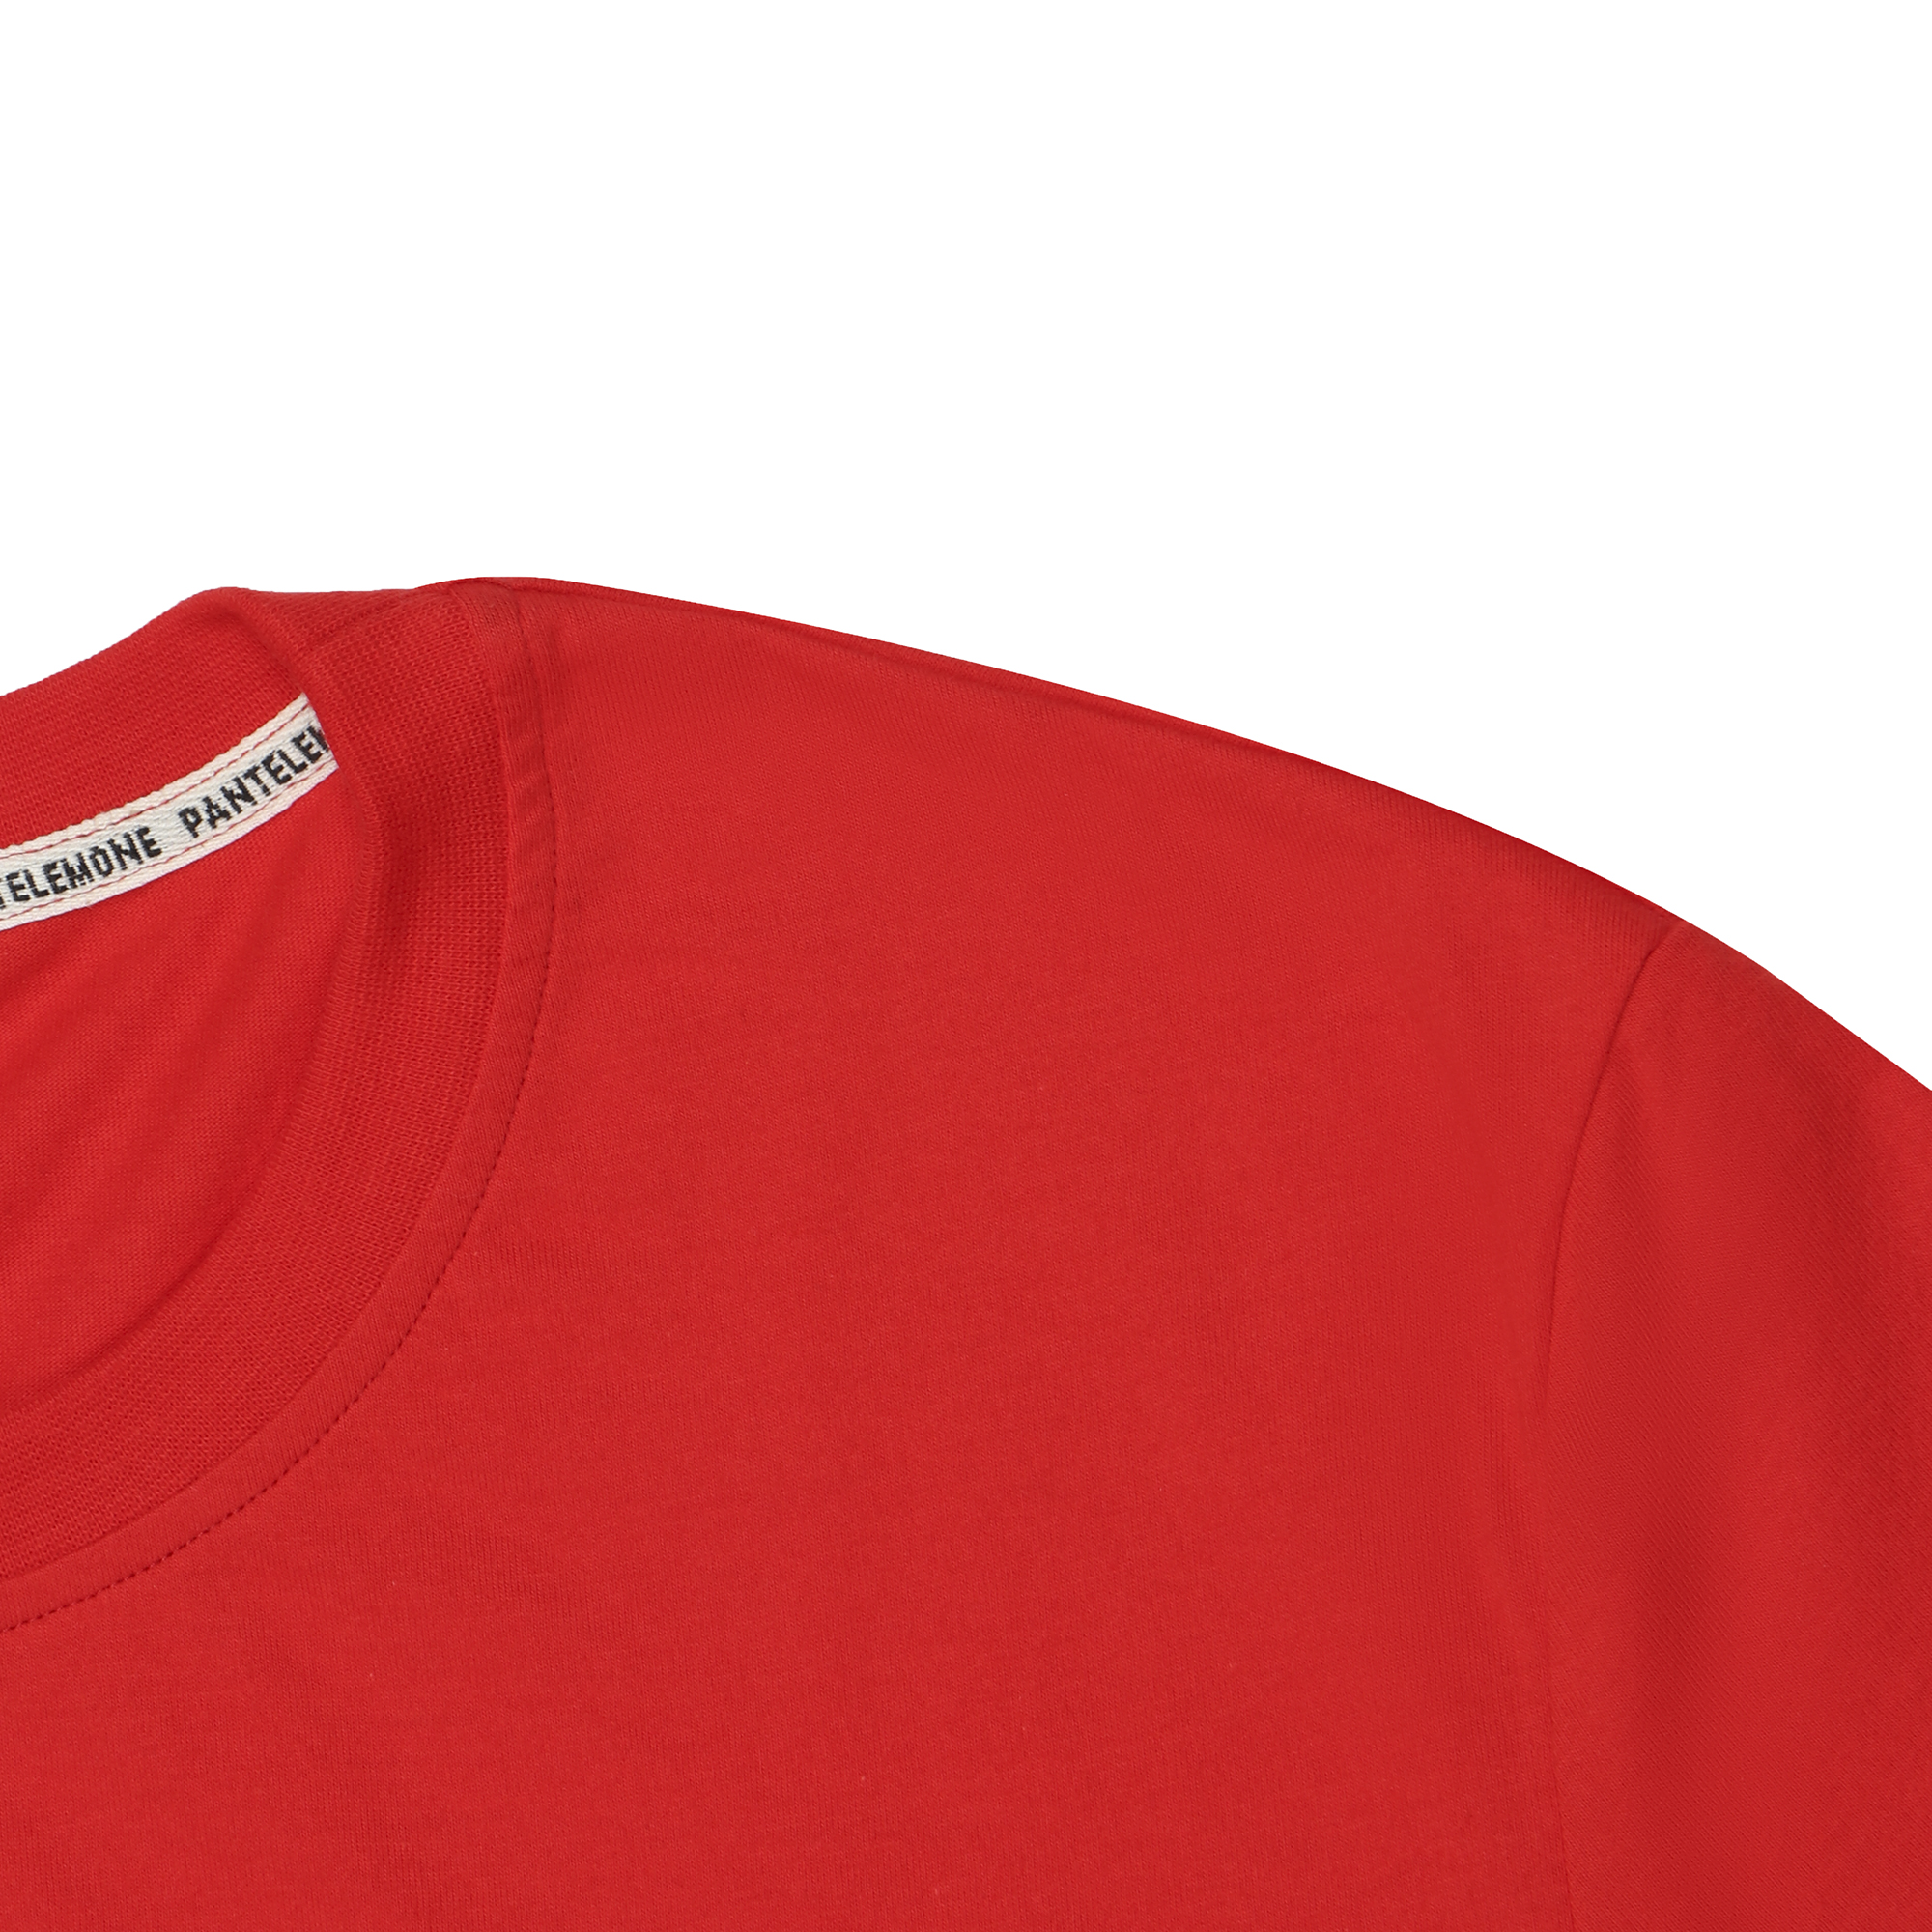 Мужская футболка Pantelemone MF-913 54 красная, цвет красный, размер 54 - фото 2